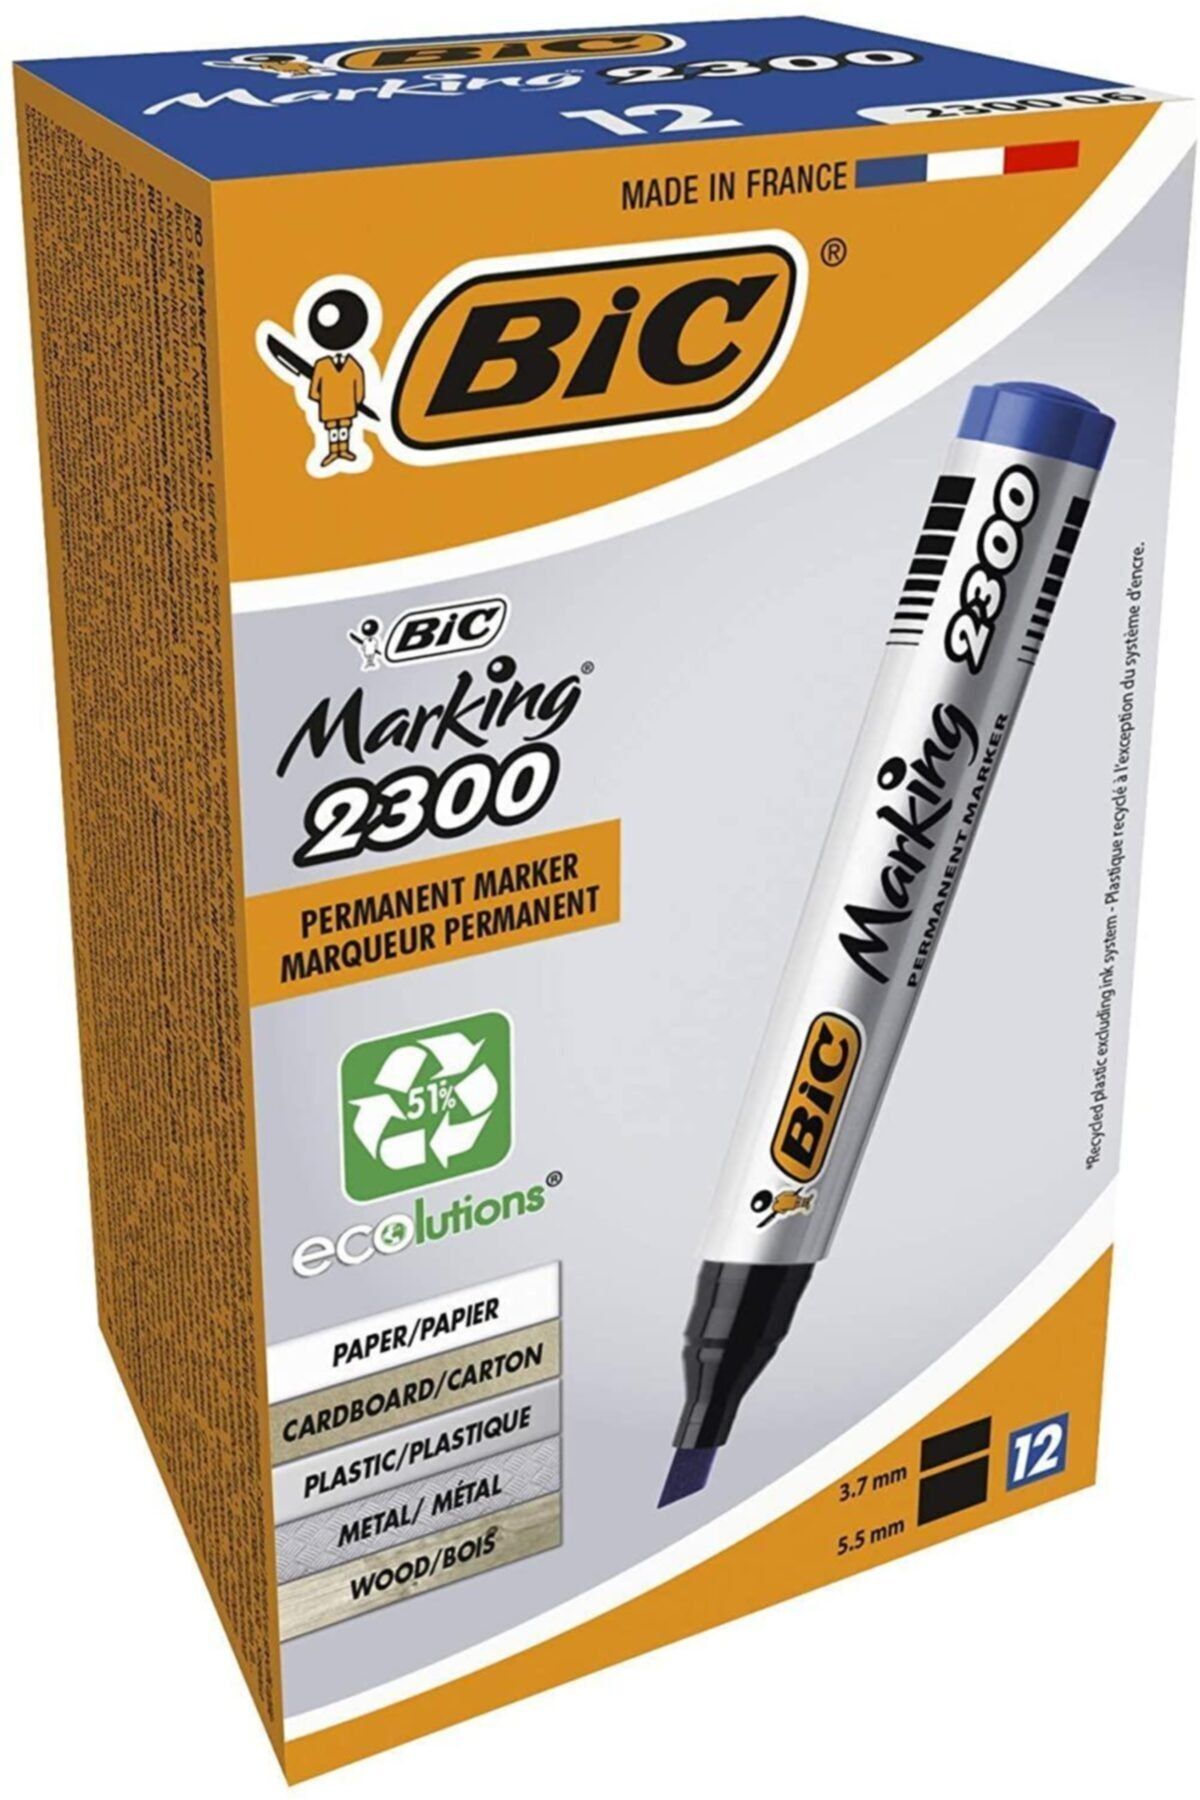 Bic Marking 2300 Marking Kesik Uçlu Permanent Marker 12 Li